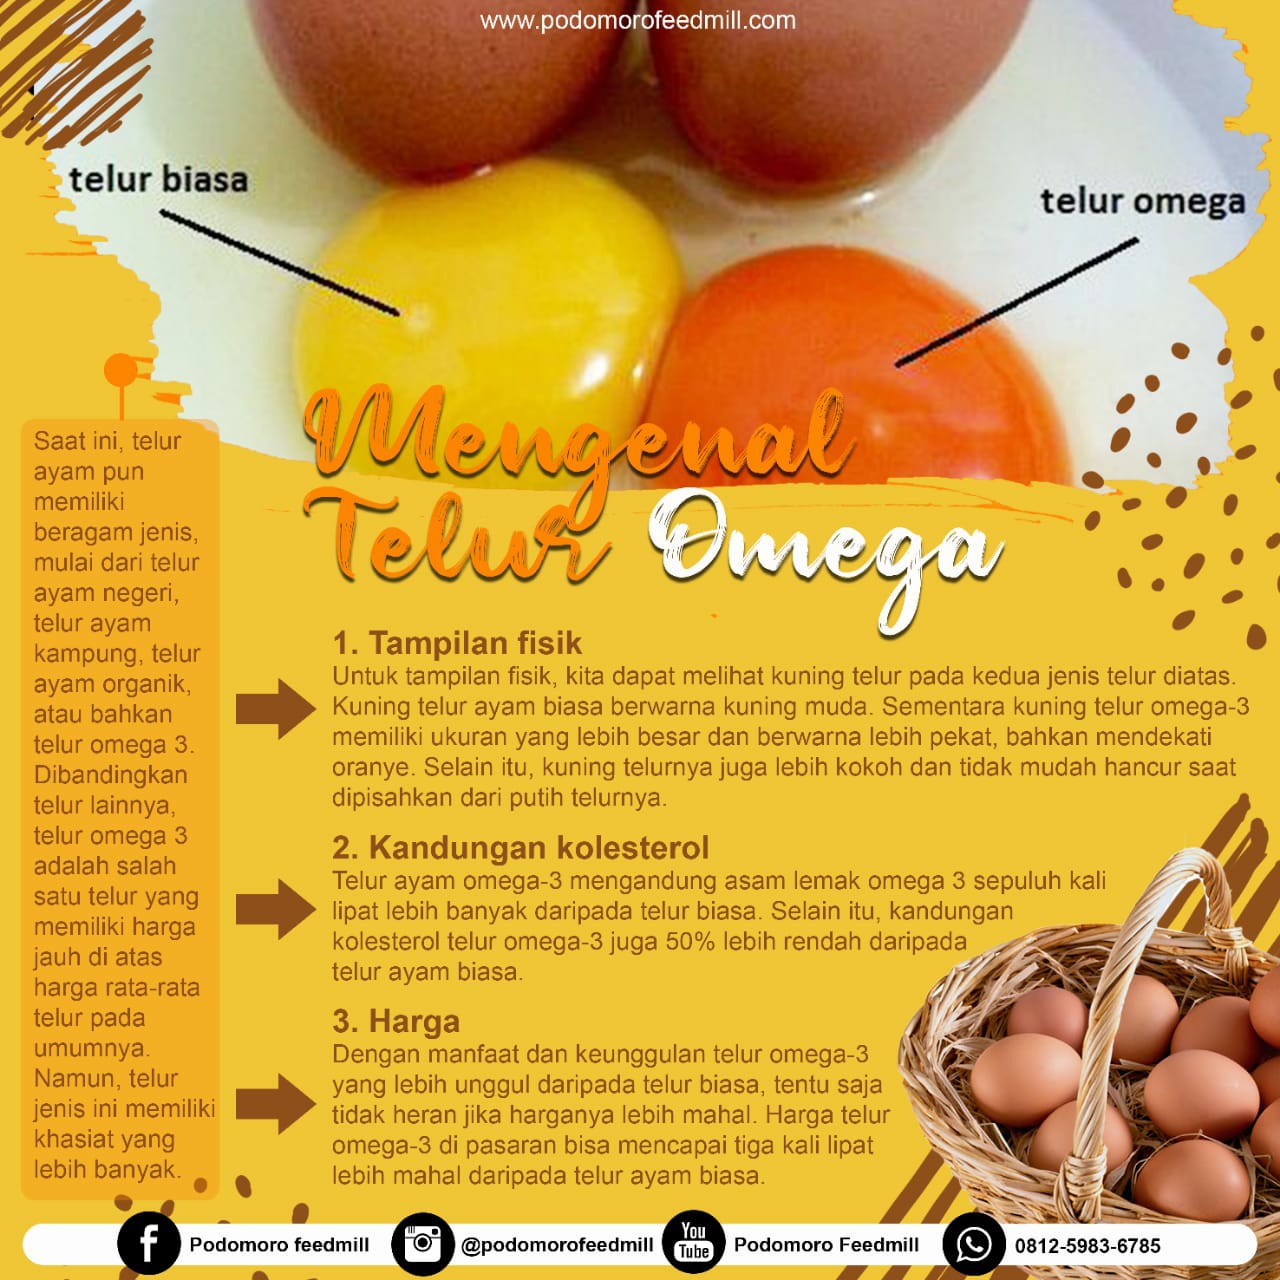 Telur jawa khasiat ayam Obat Kuat